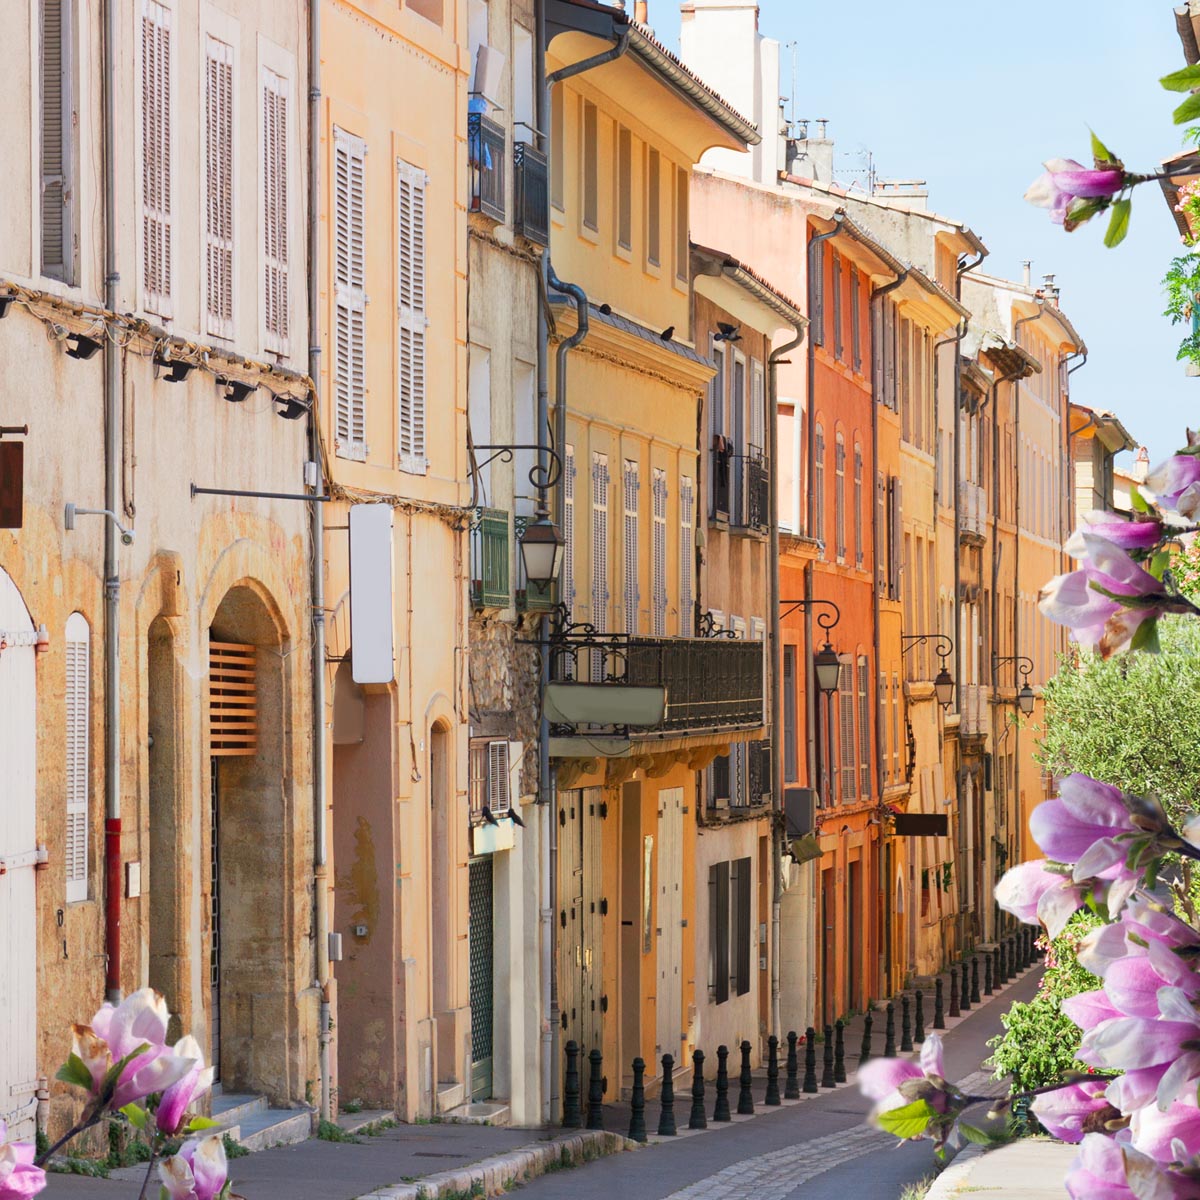 Vieille rue d'Aix-en-Provence